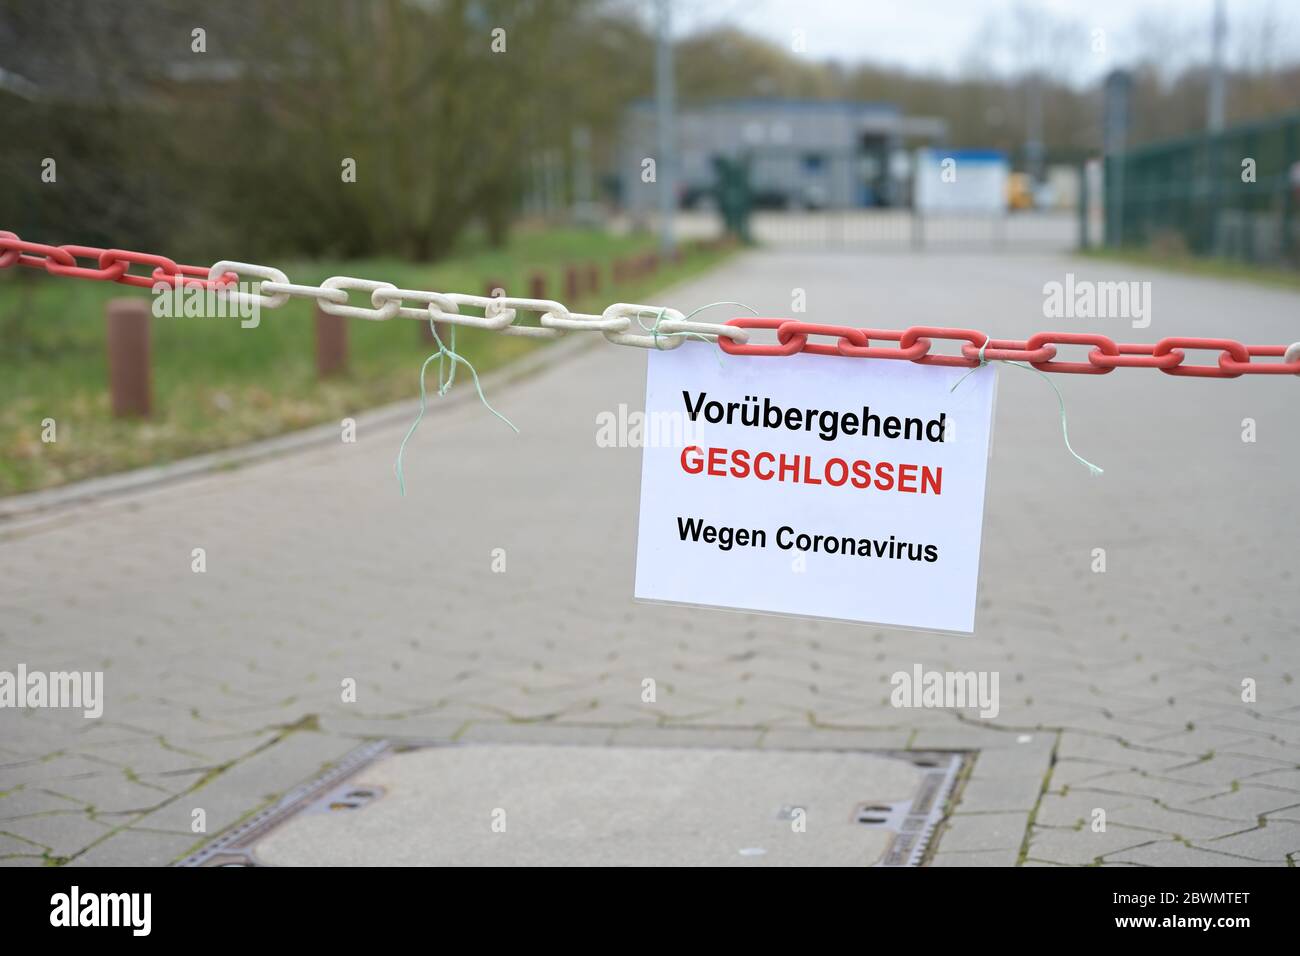 Barriera a catena rossa bianca di fronte ad una società e segno con testo tedesco Vorübergehend Geschlossen, Wegen Coronavirus, che significa temporaneamente chiuso a causa di t Foto Stock